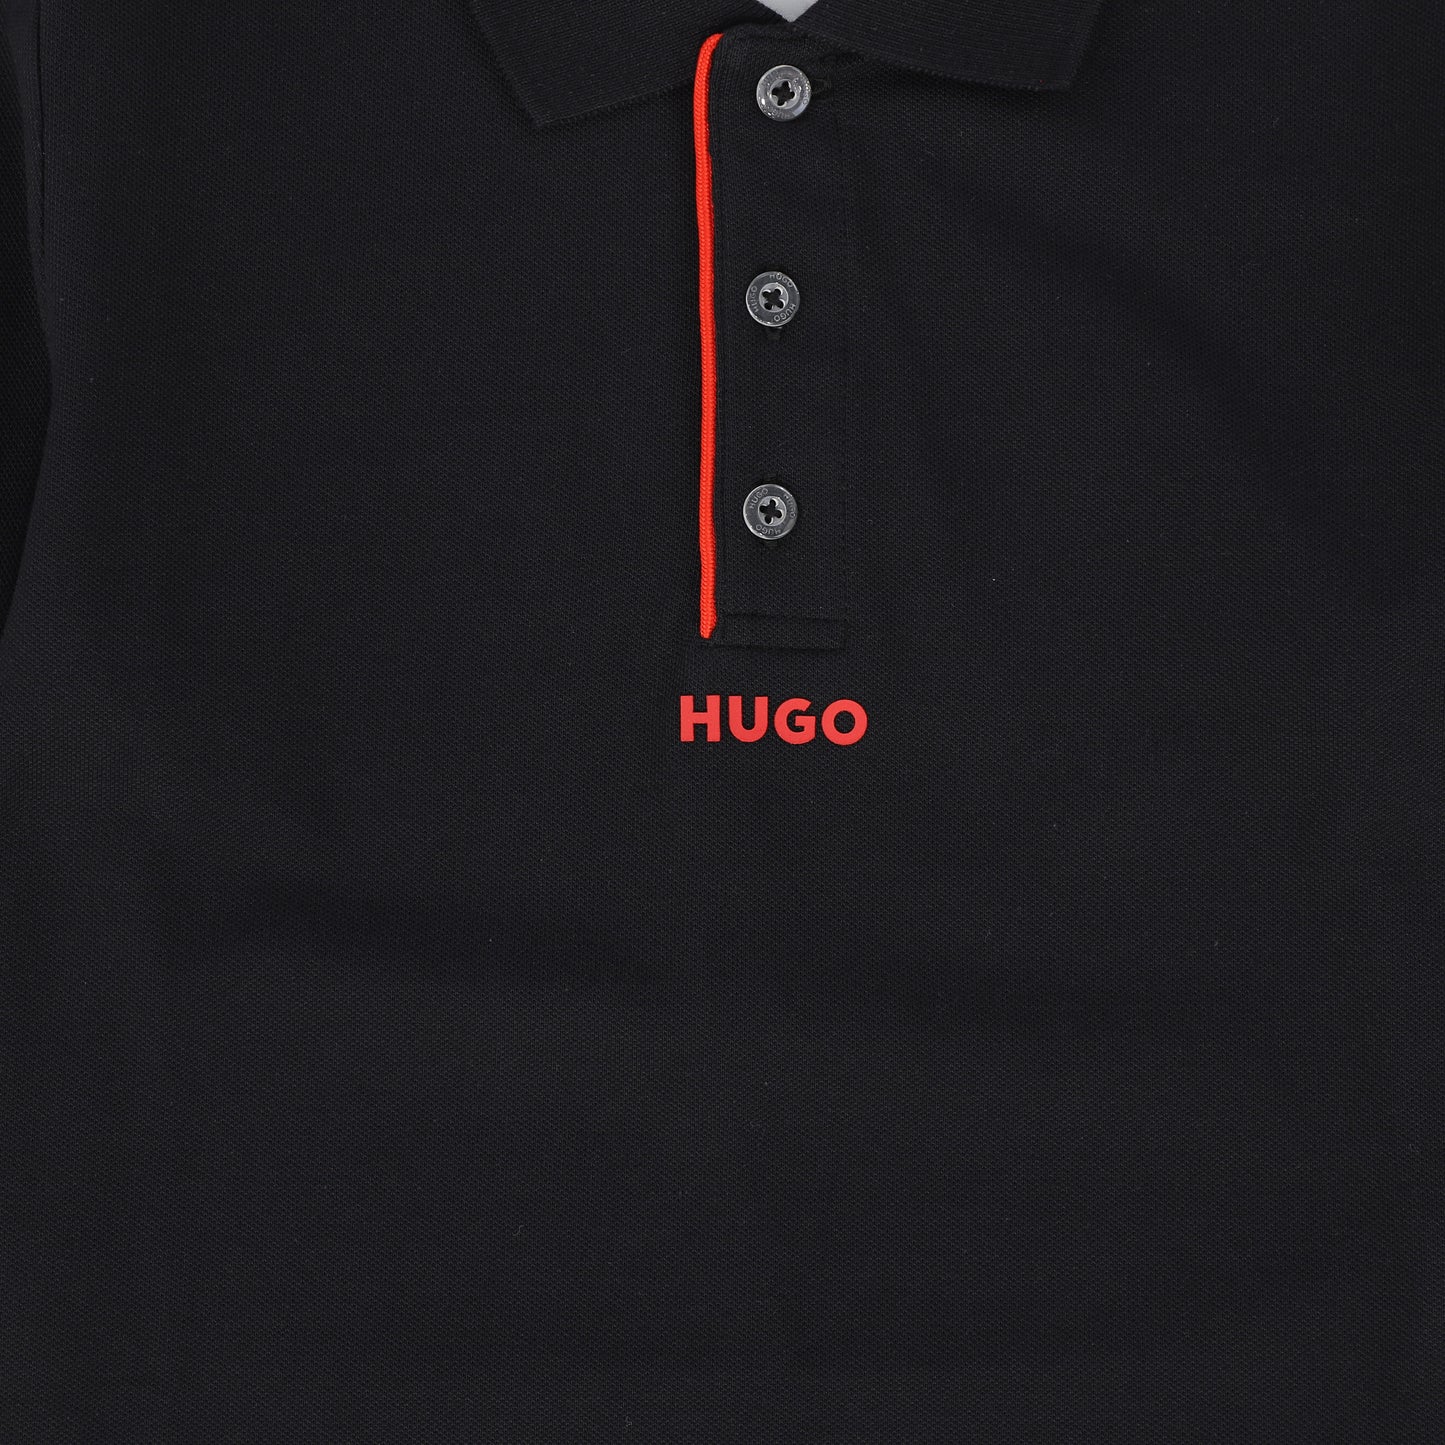 HUGO BLACK SOLID POLO [FINAL SALE]